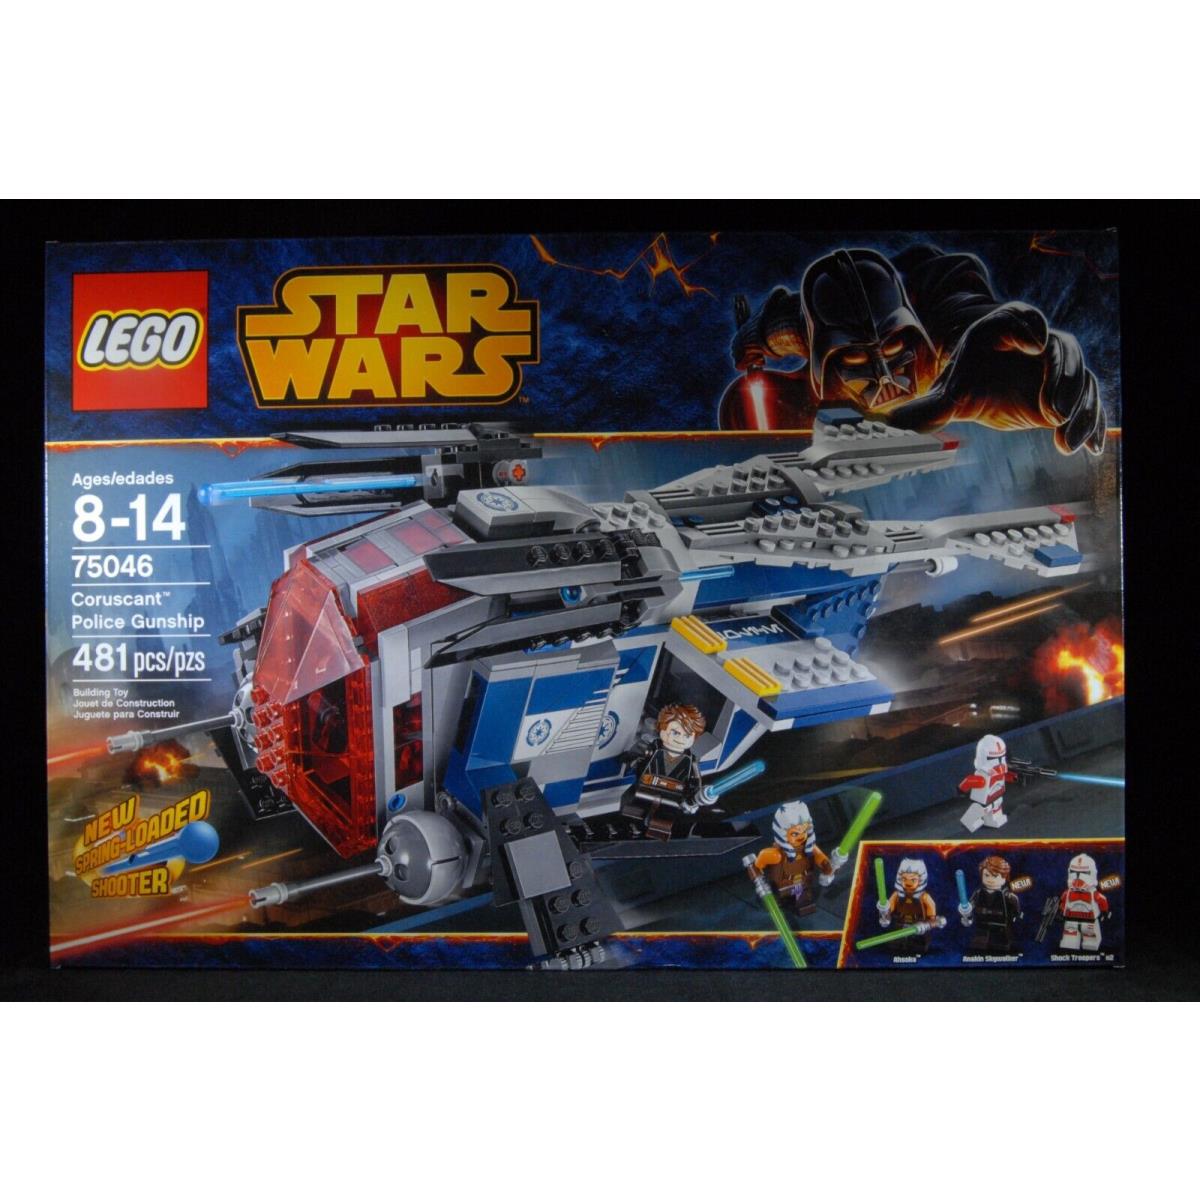 Lego Star Wars Coruscant Police Gunship 75046 Retired Rare